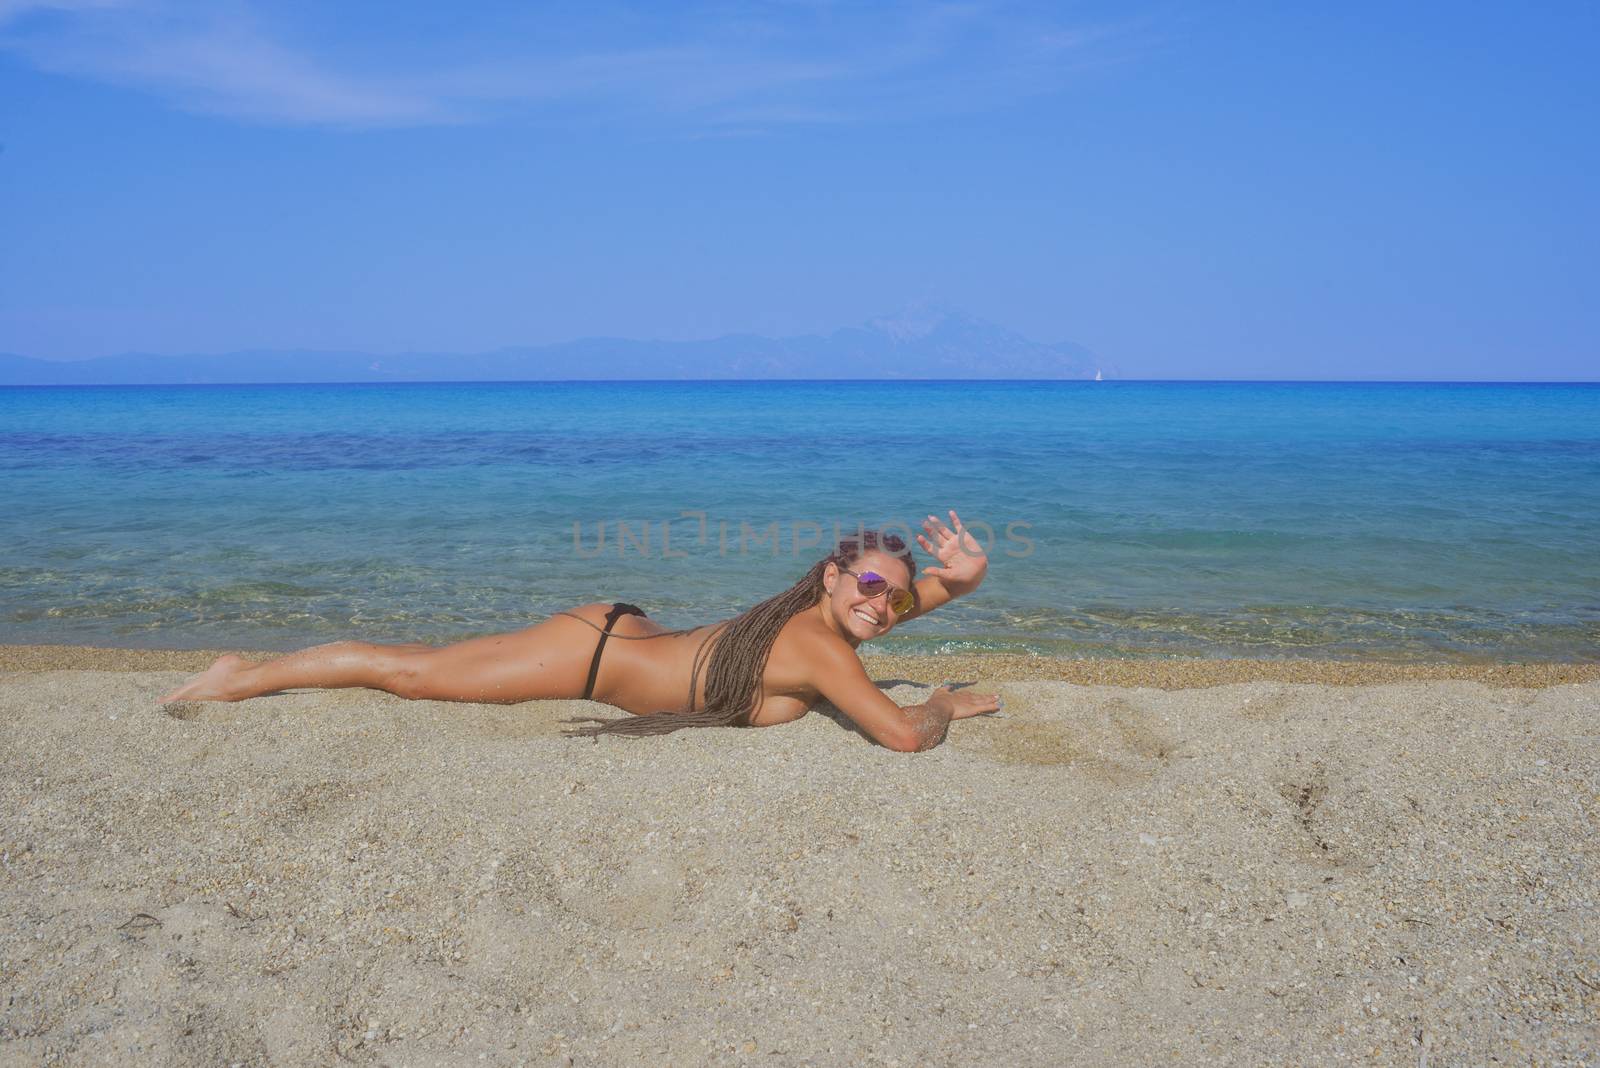 Woman Bikini Beach Waving by vilevi